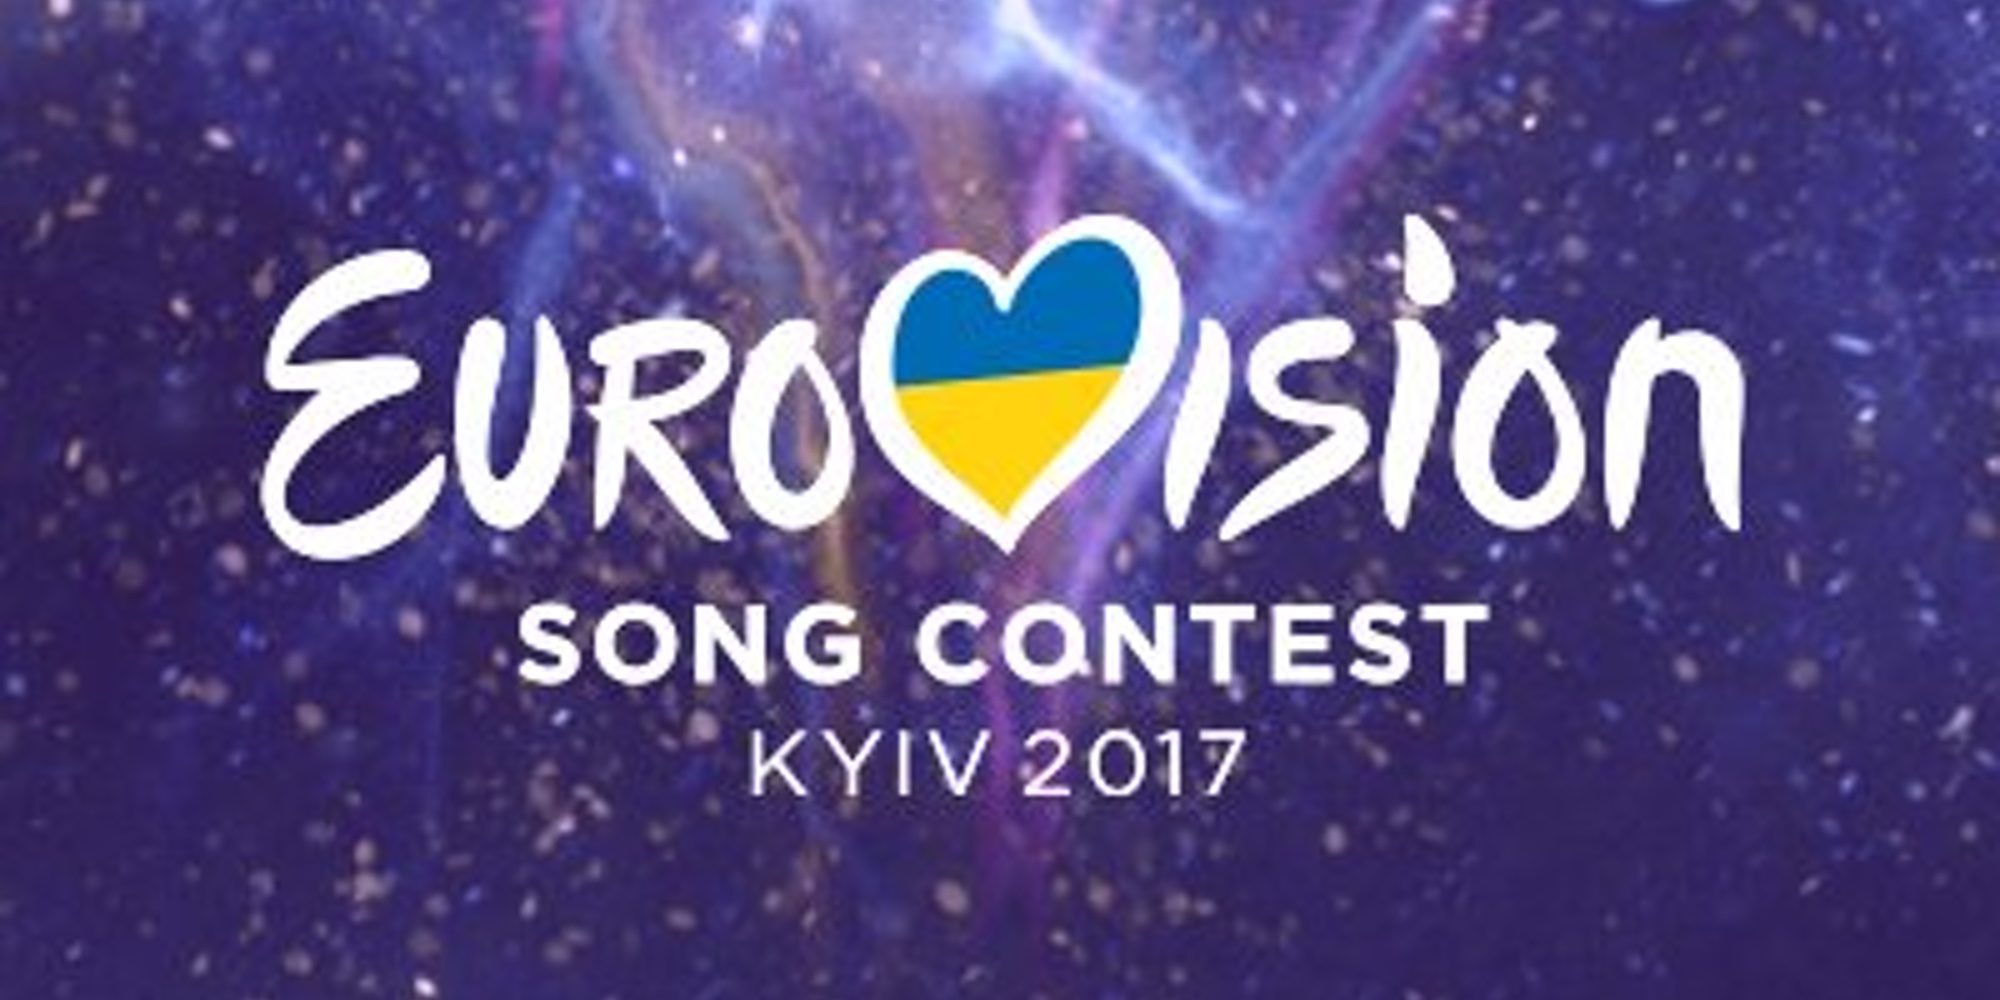 Los 30 finalistas de 'Eurocasting' que lucharán por representar a España en el festival de Eurovisión 2017